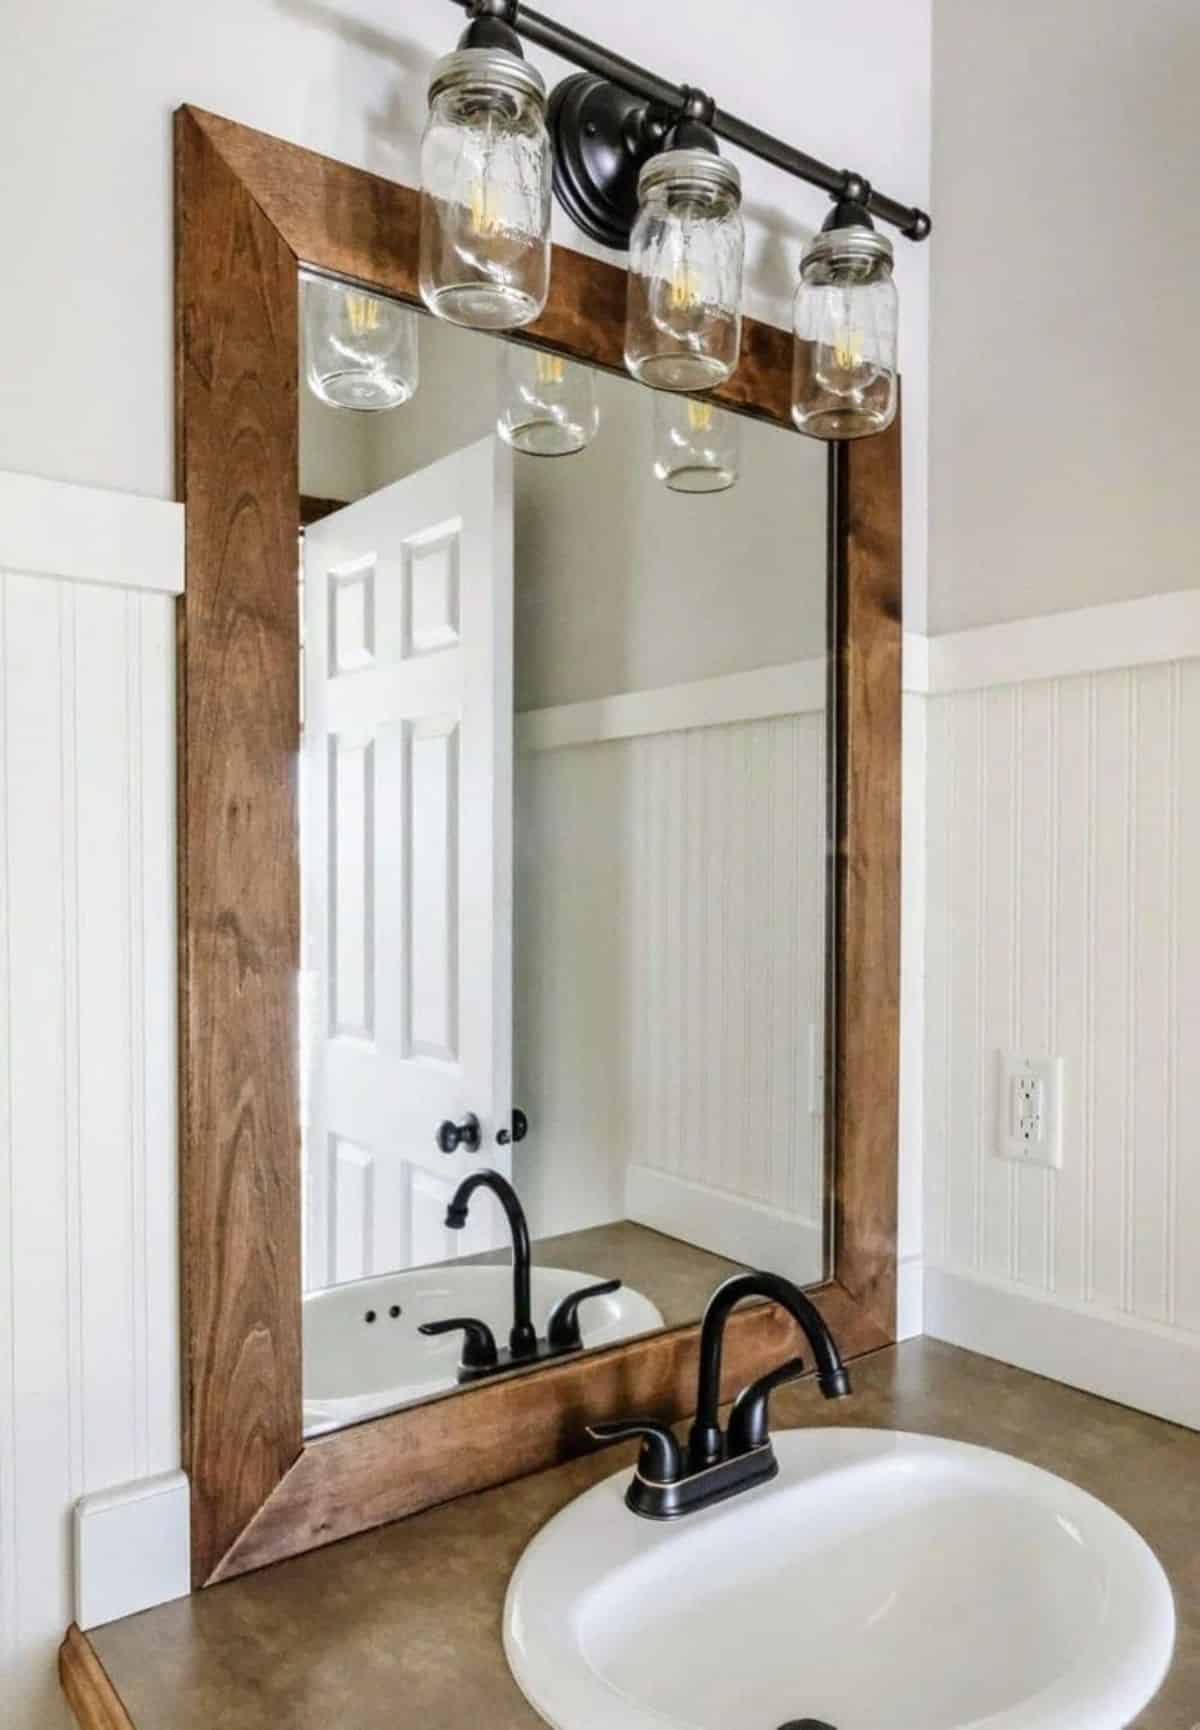 DIY Wood Frame Mirror on a Budget